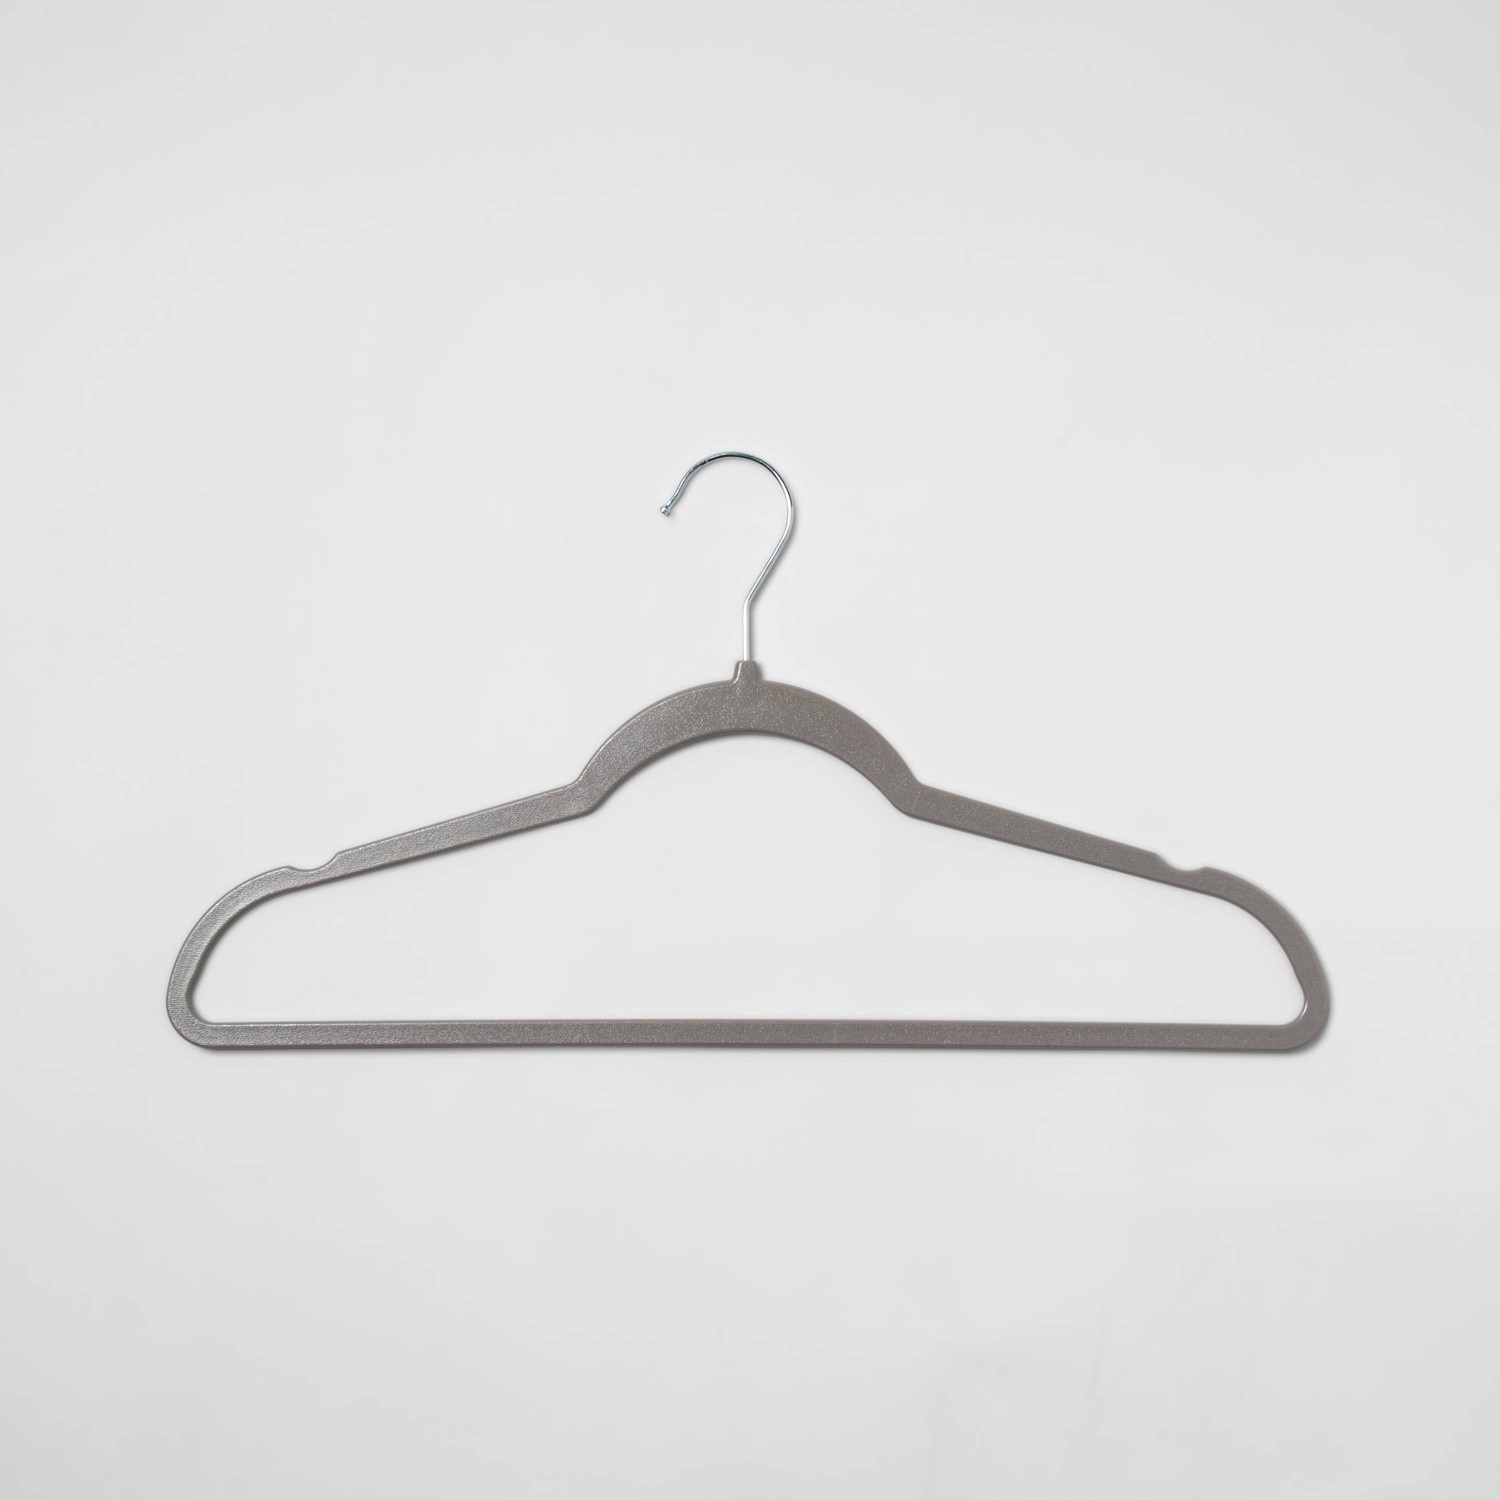 Plastic : Closet Hangers : Target  Plastic hangers, Room essentials, Hanger